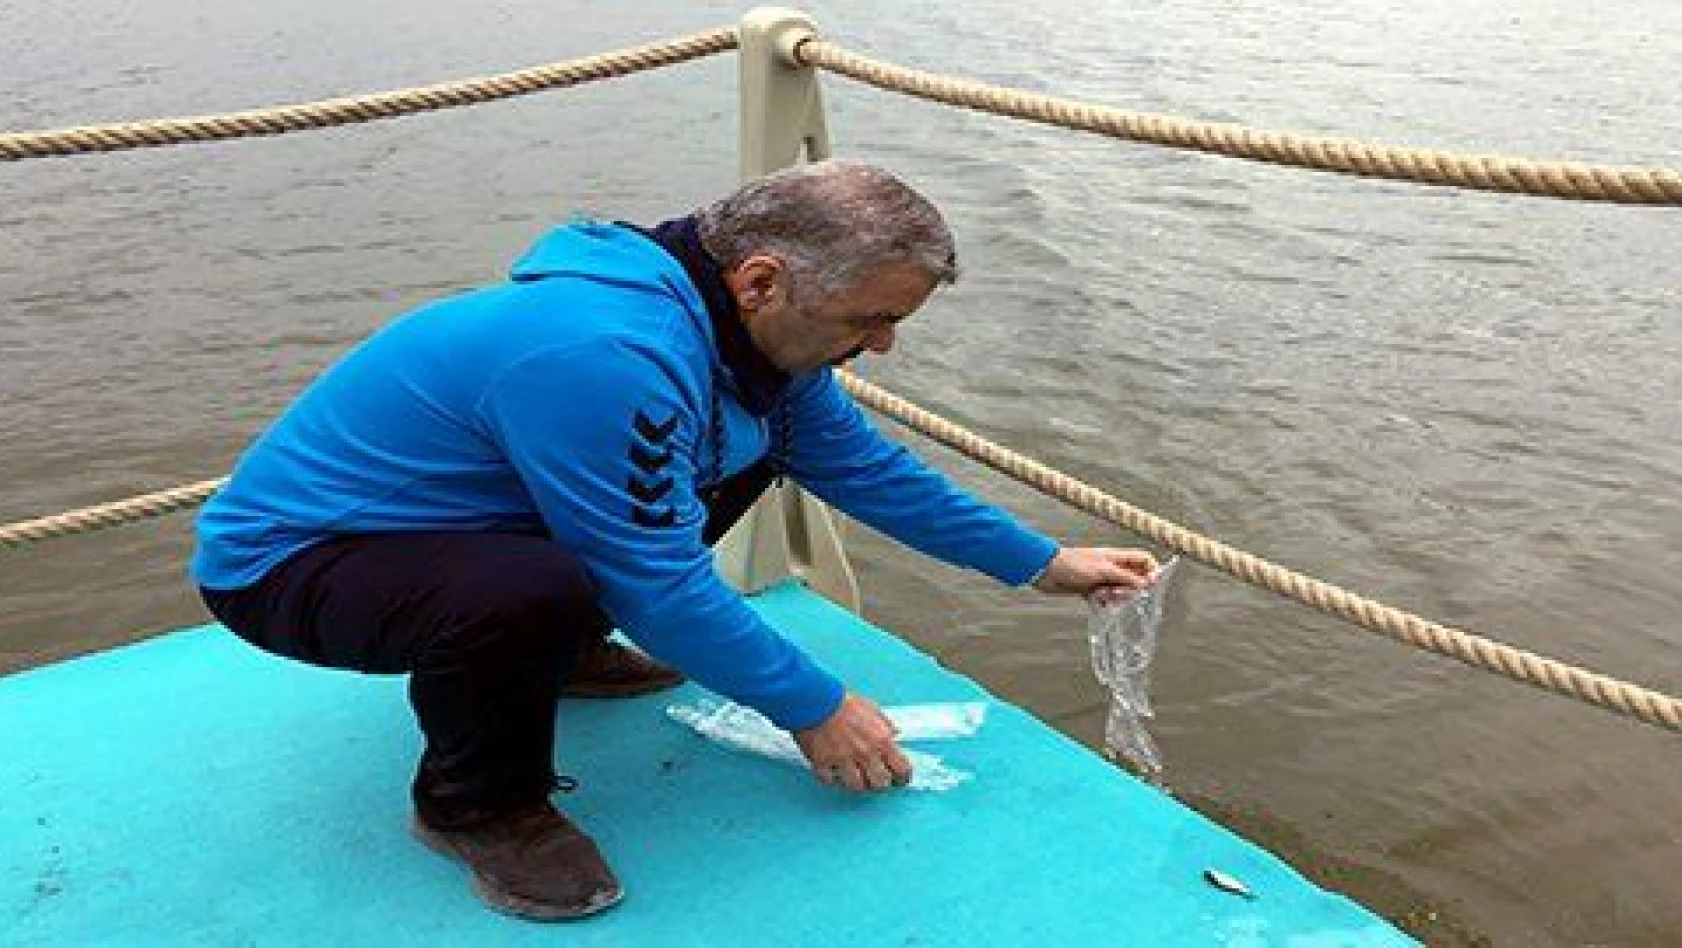 Doğa yürüyüşünde 120 bin pullu sazan balığı suyla buluşturuldu 